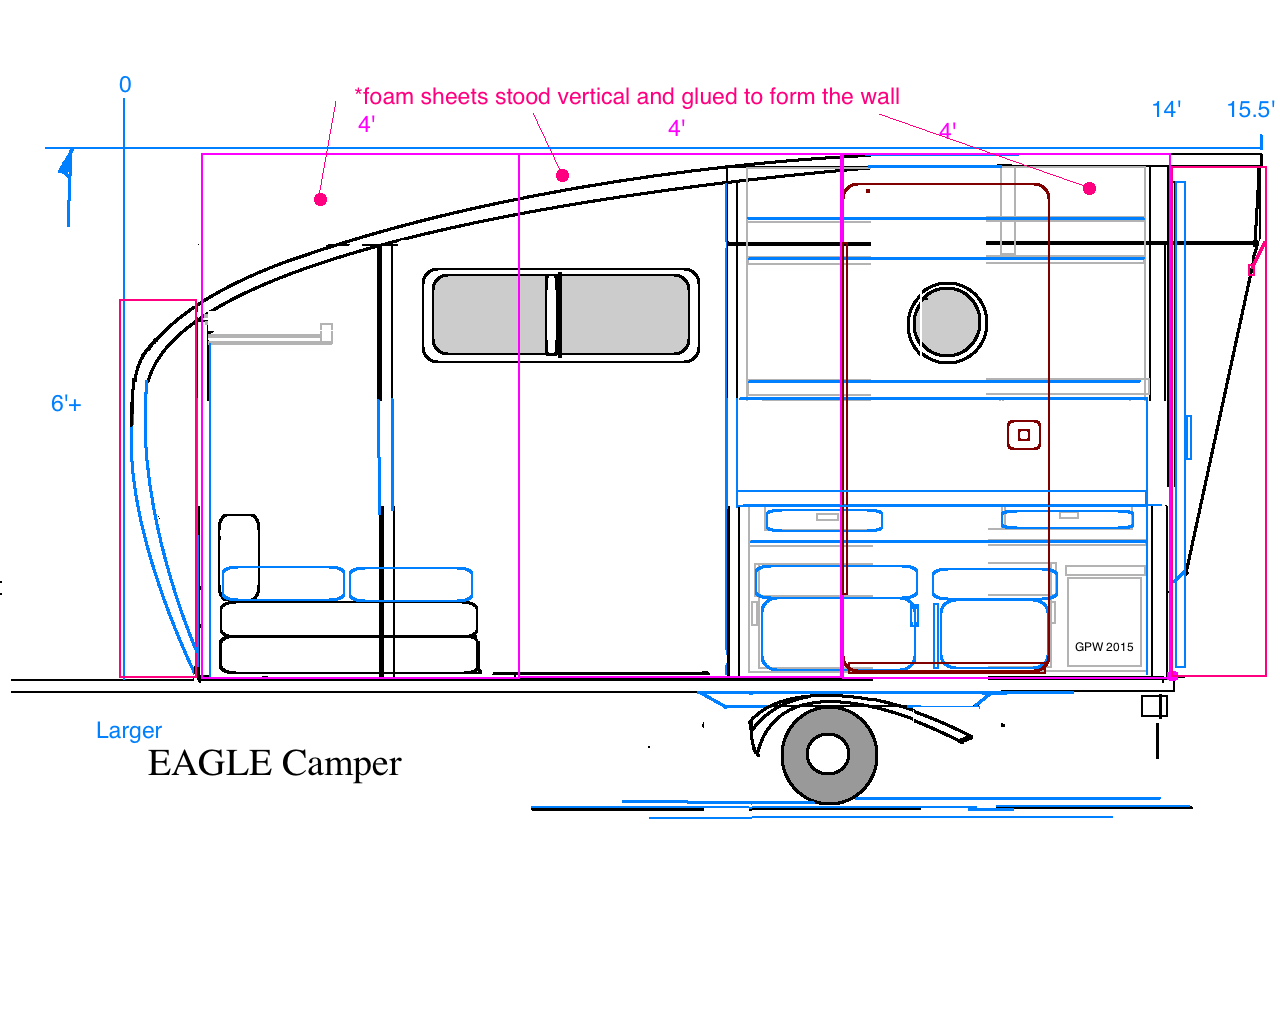 Larger Eagle Camper.png